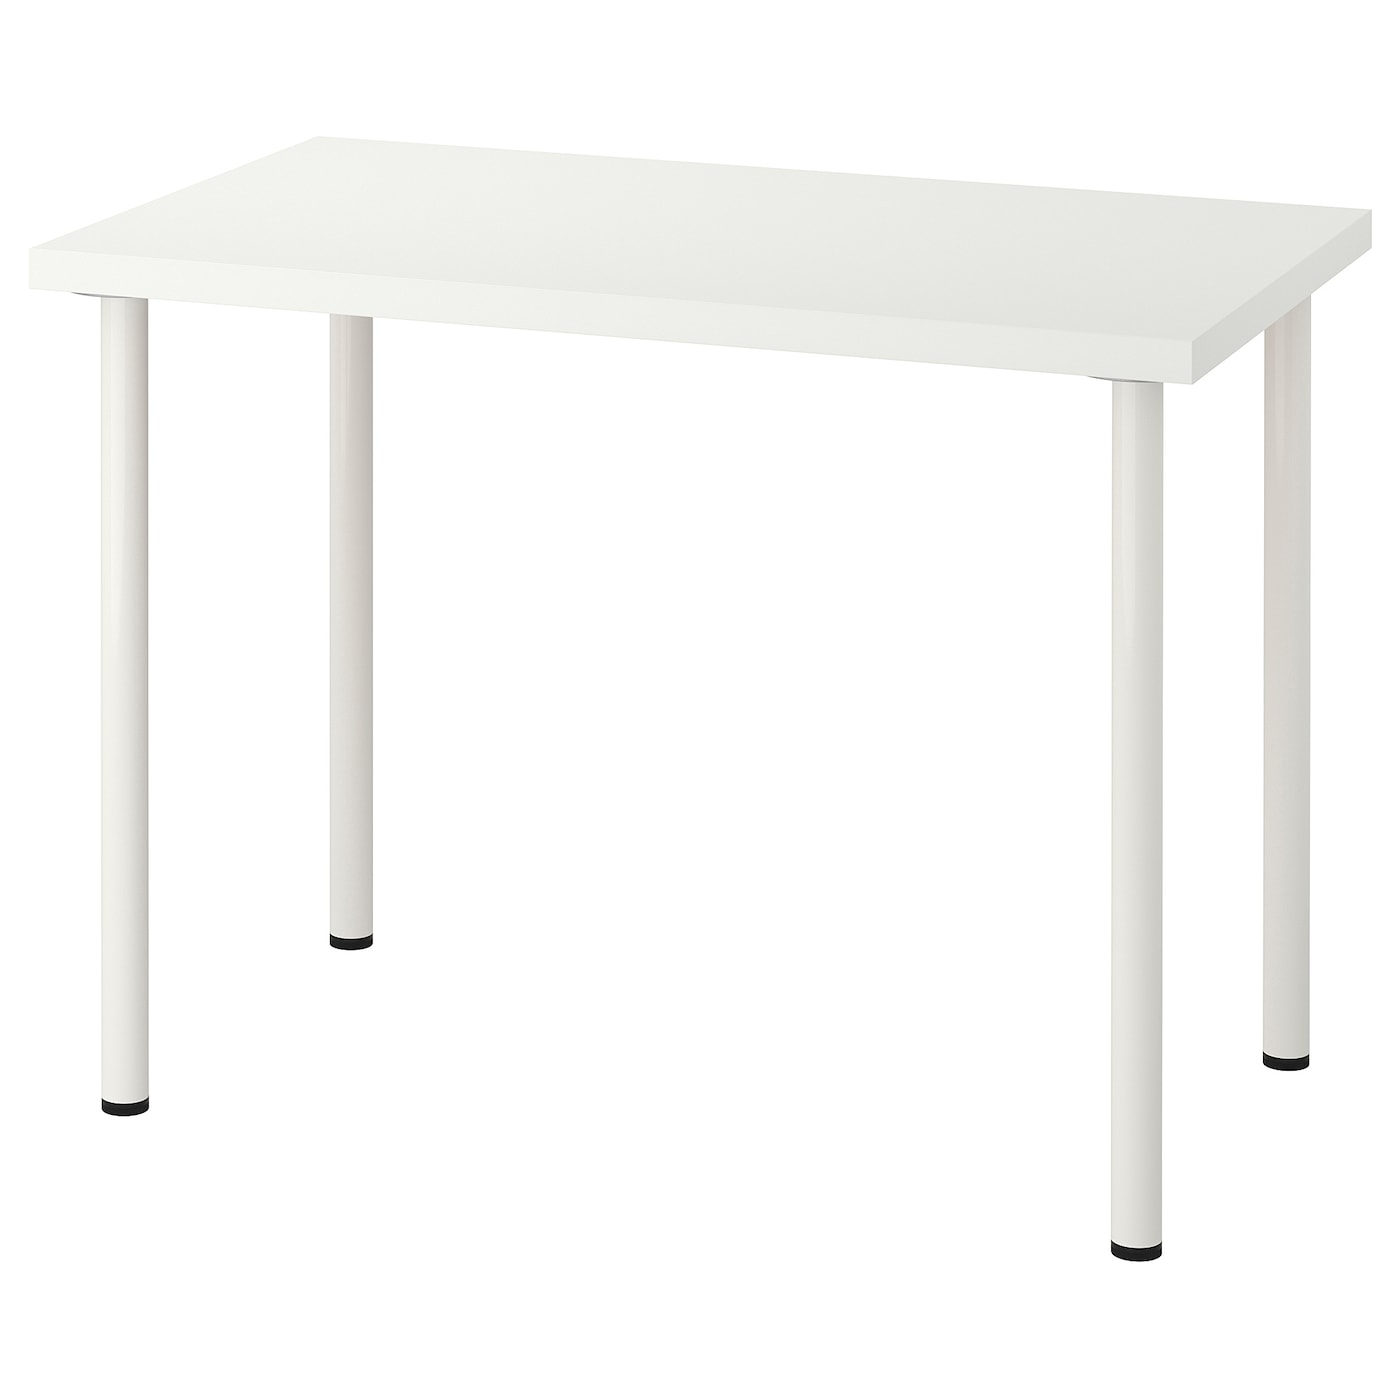 Письменный стол - IKEA LINNMON/ADILS, 100x60 см, белый, ЛИННМОН/АДИЛЬС ИКЕА